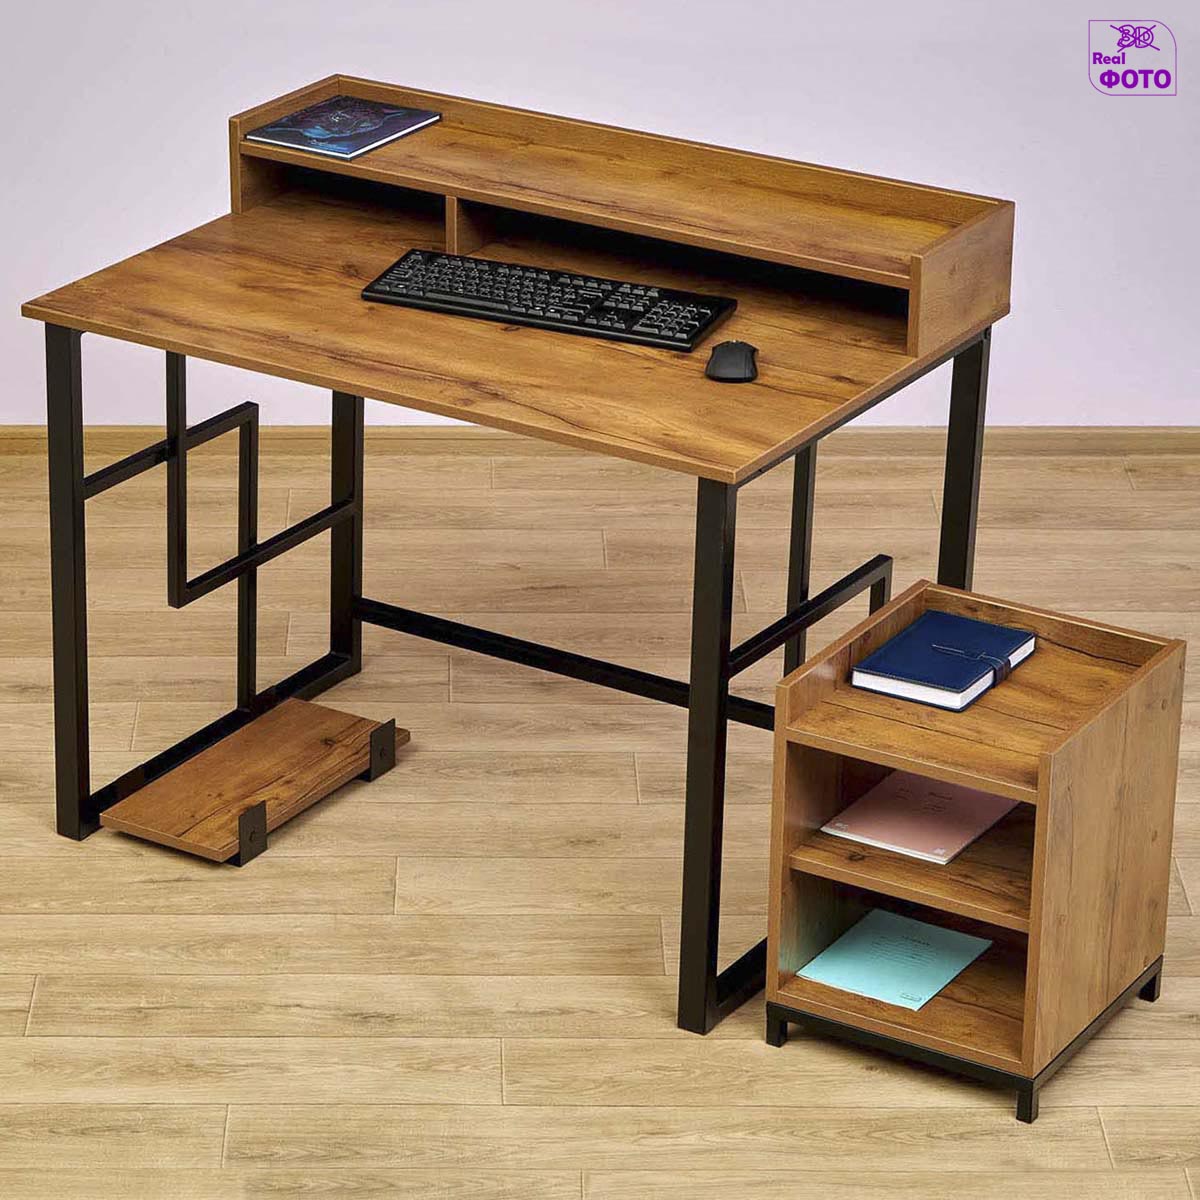 Стильный компьютерный стол с надстройкой